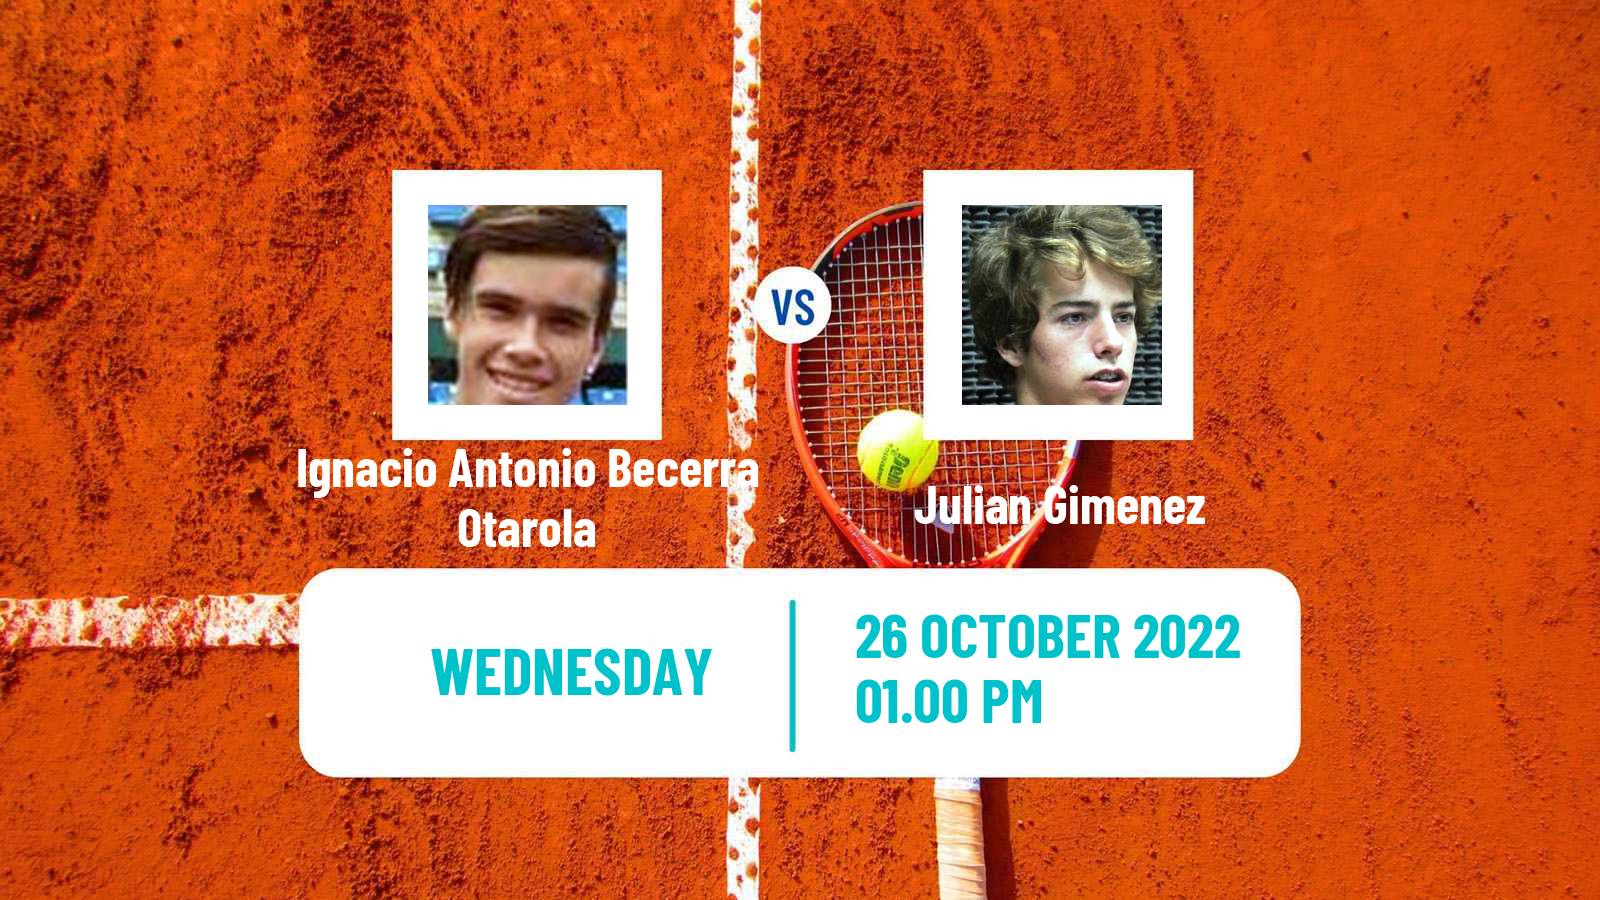 Tennis ITF Tournaments Ignacio Antonio Becerra Otarola - Julian Gimenez